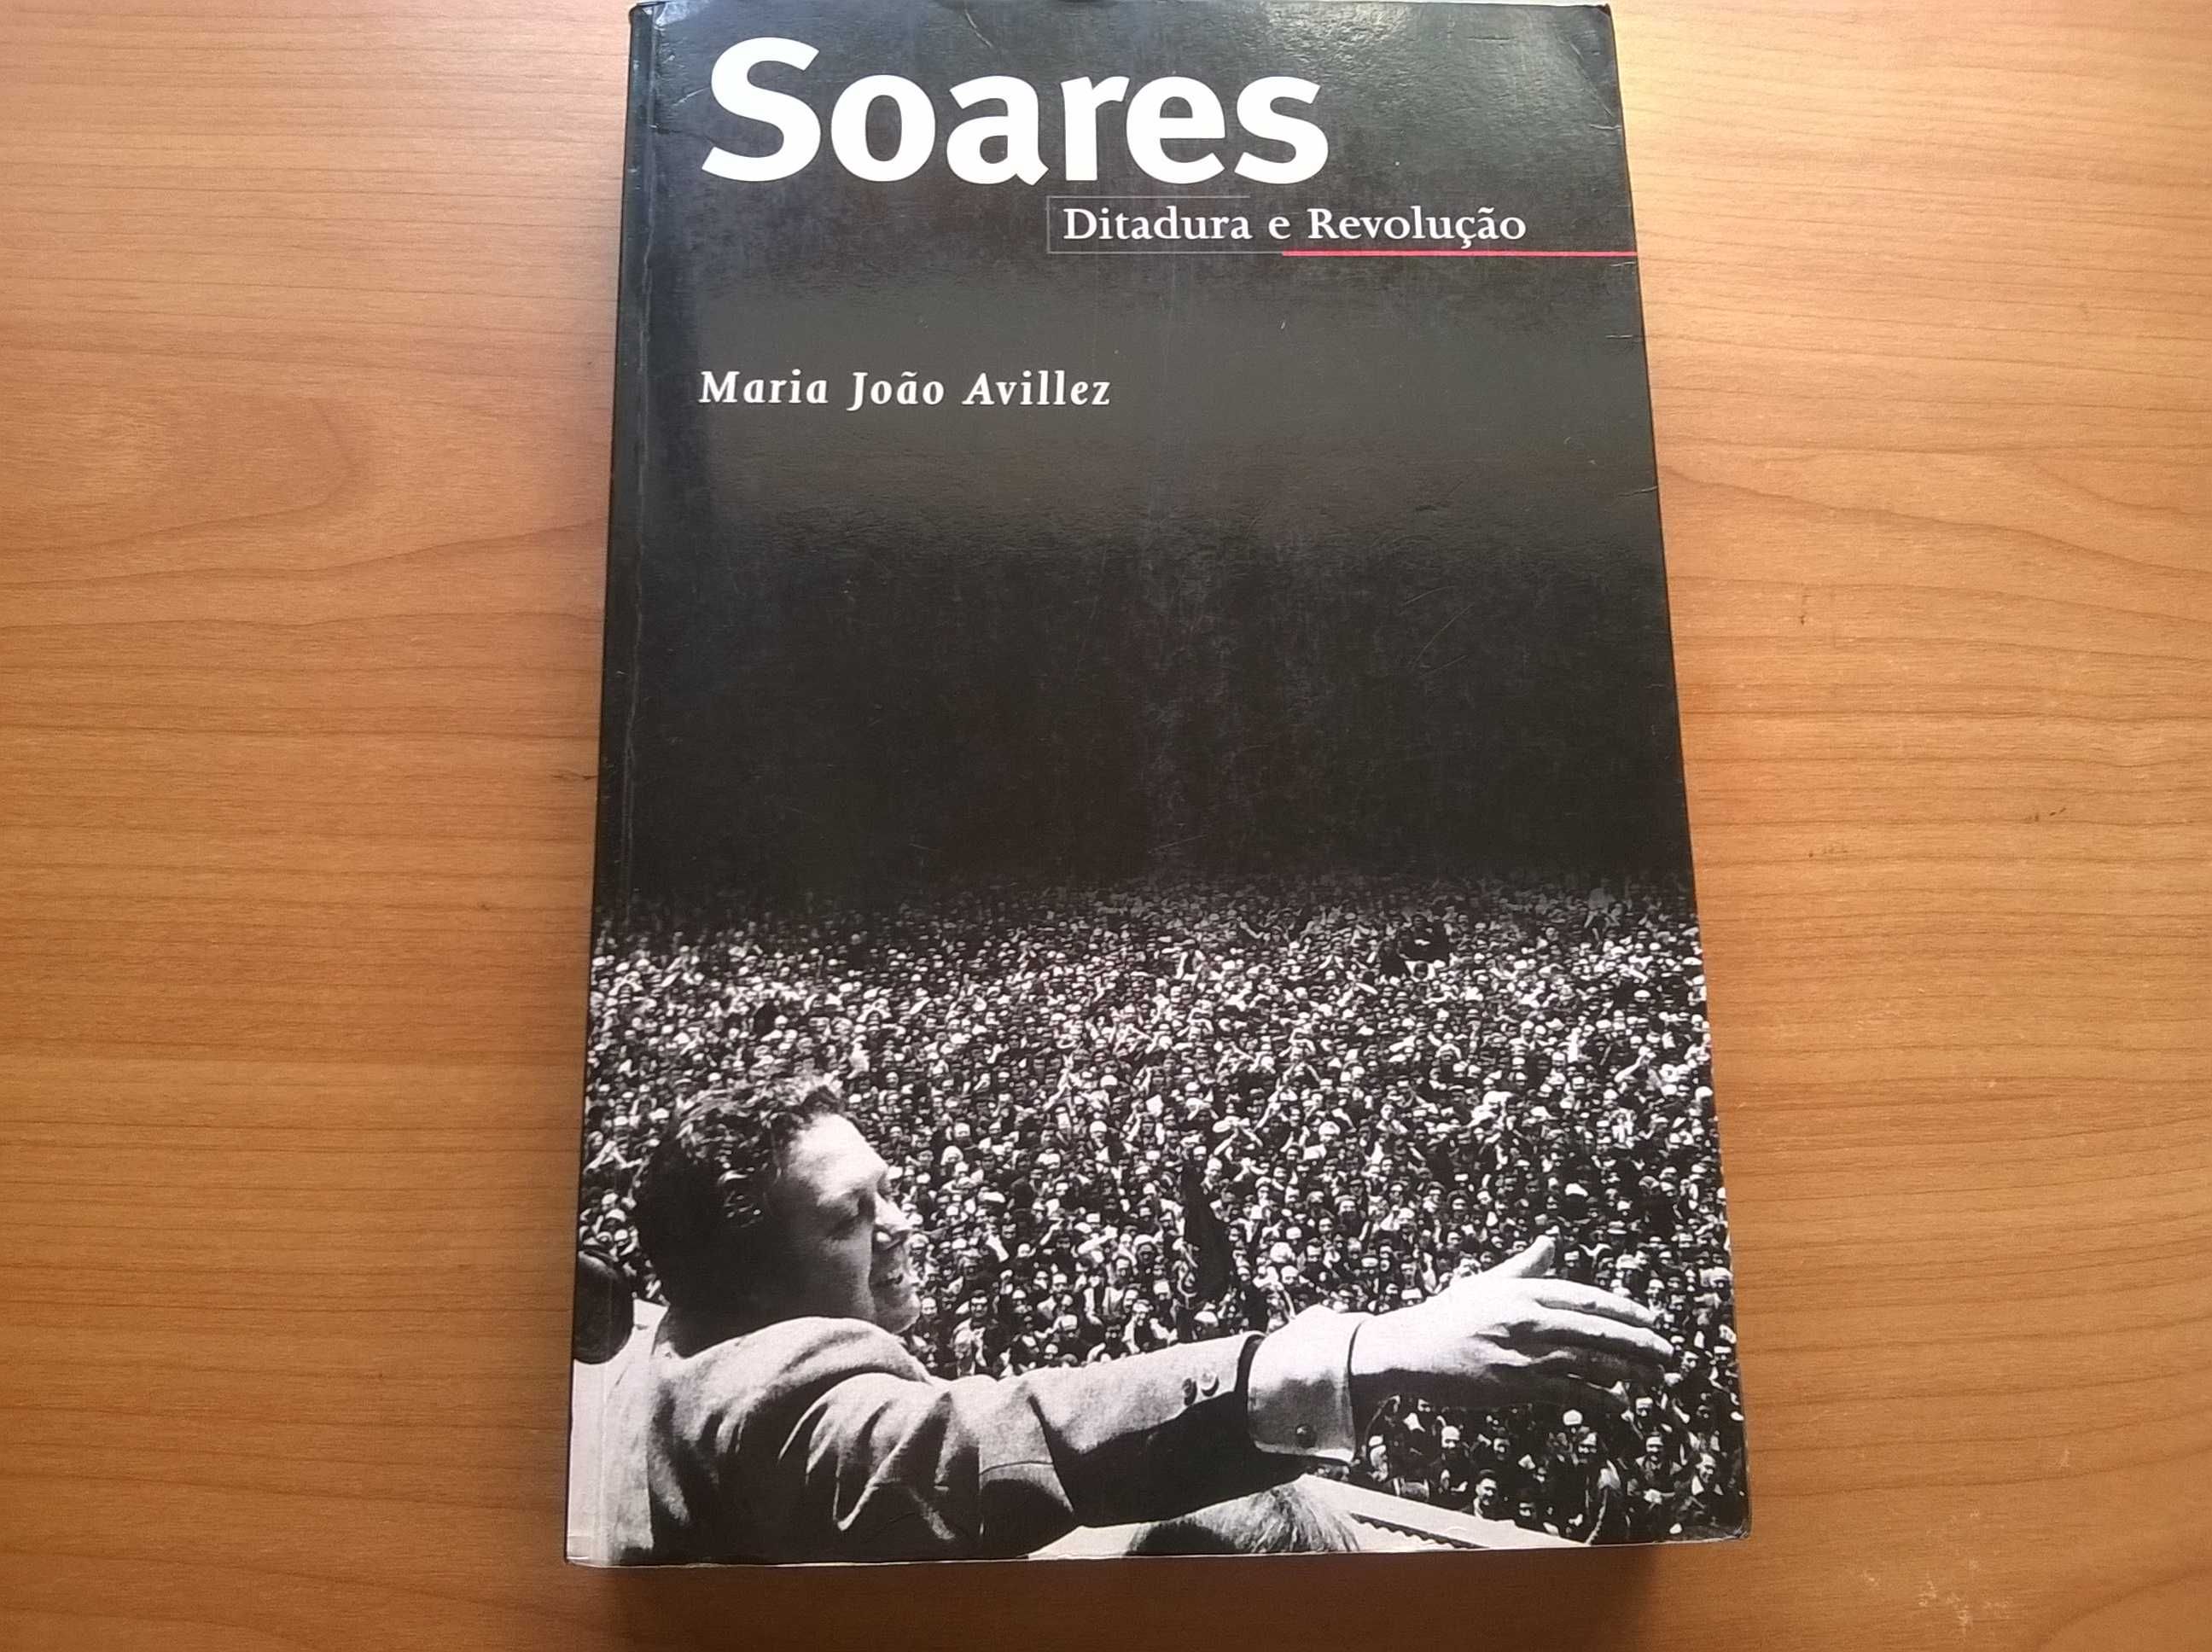 Soares, Ditadura e Revolução - Maria João Avilez (portes grátis)